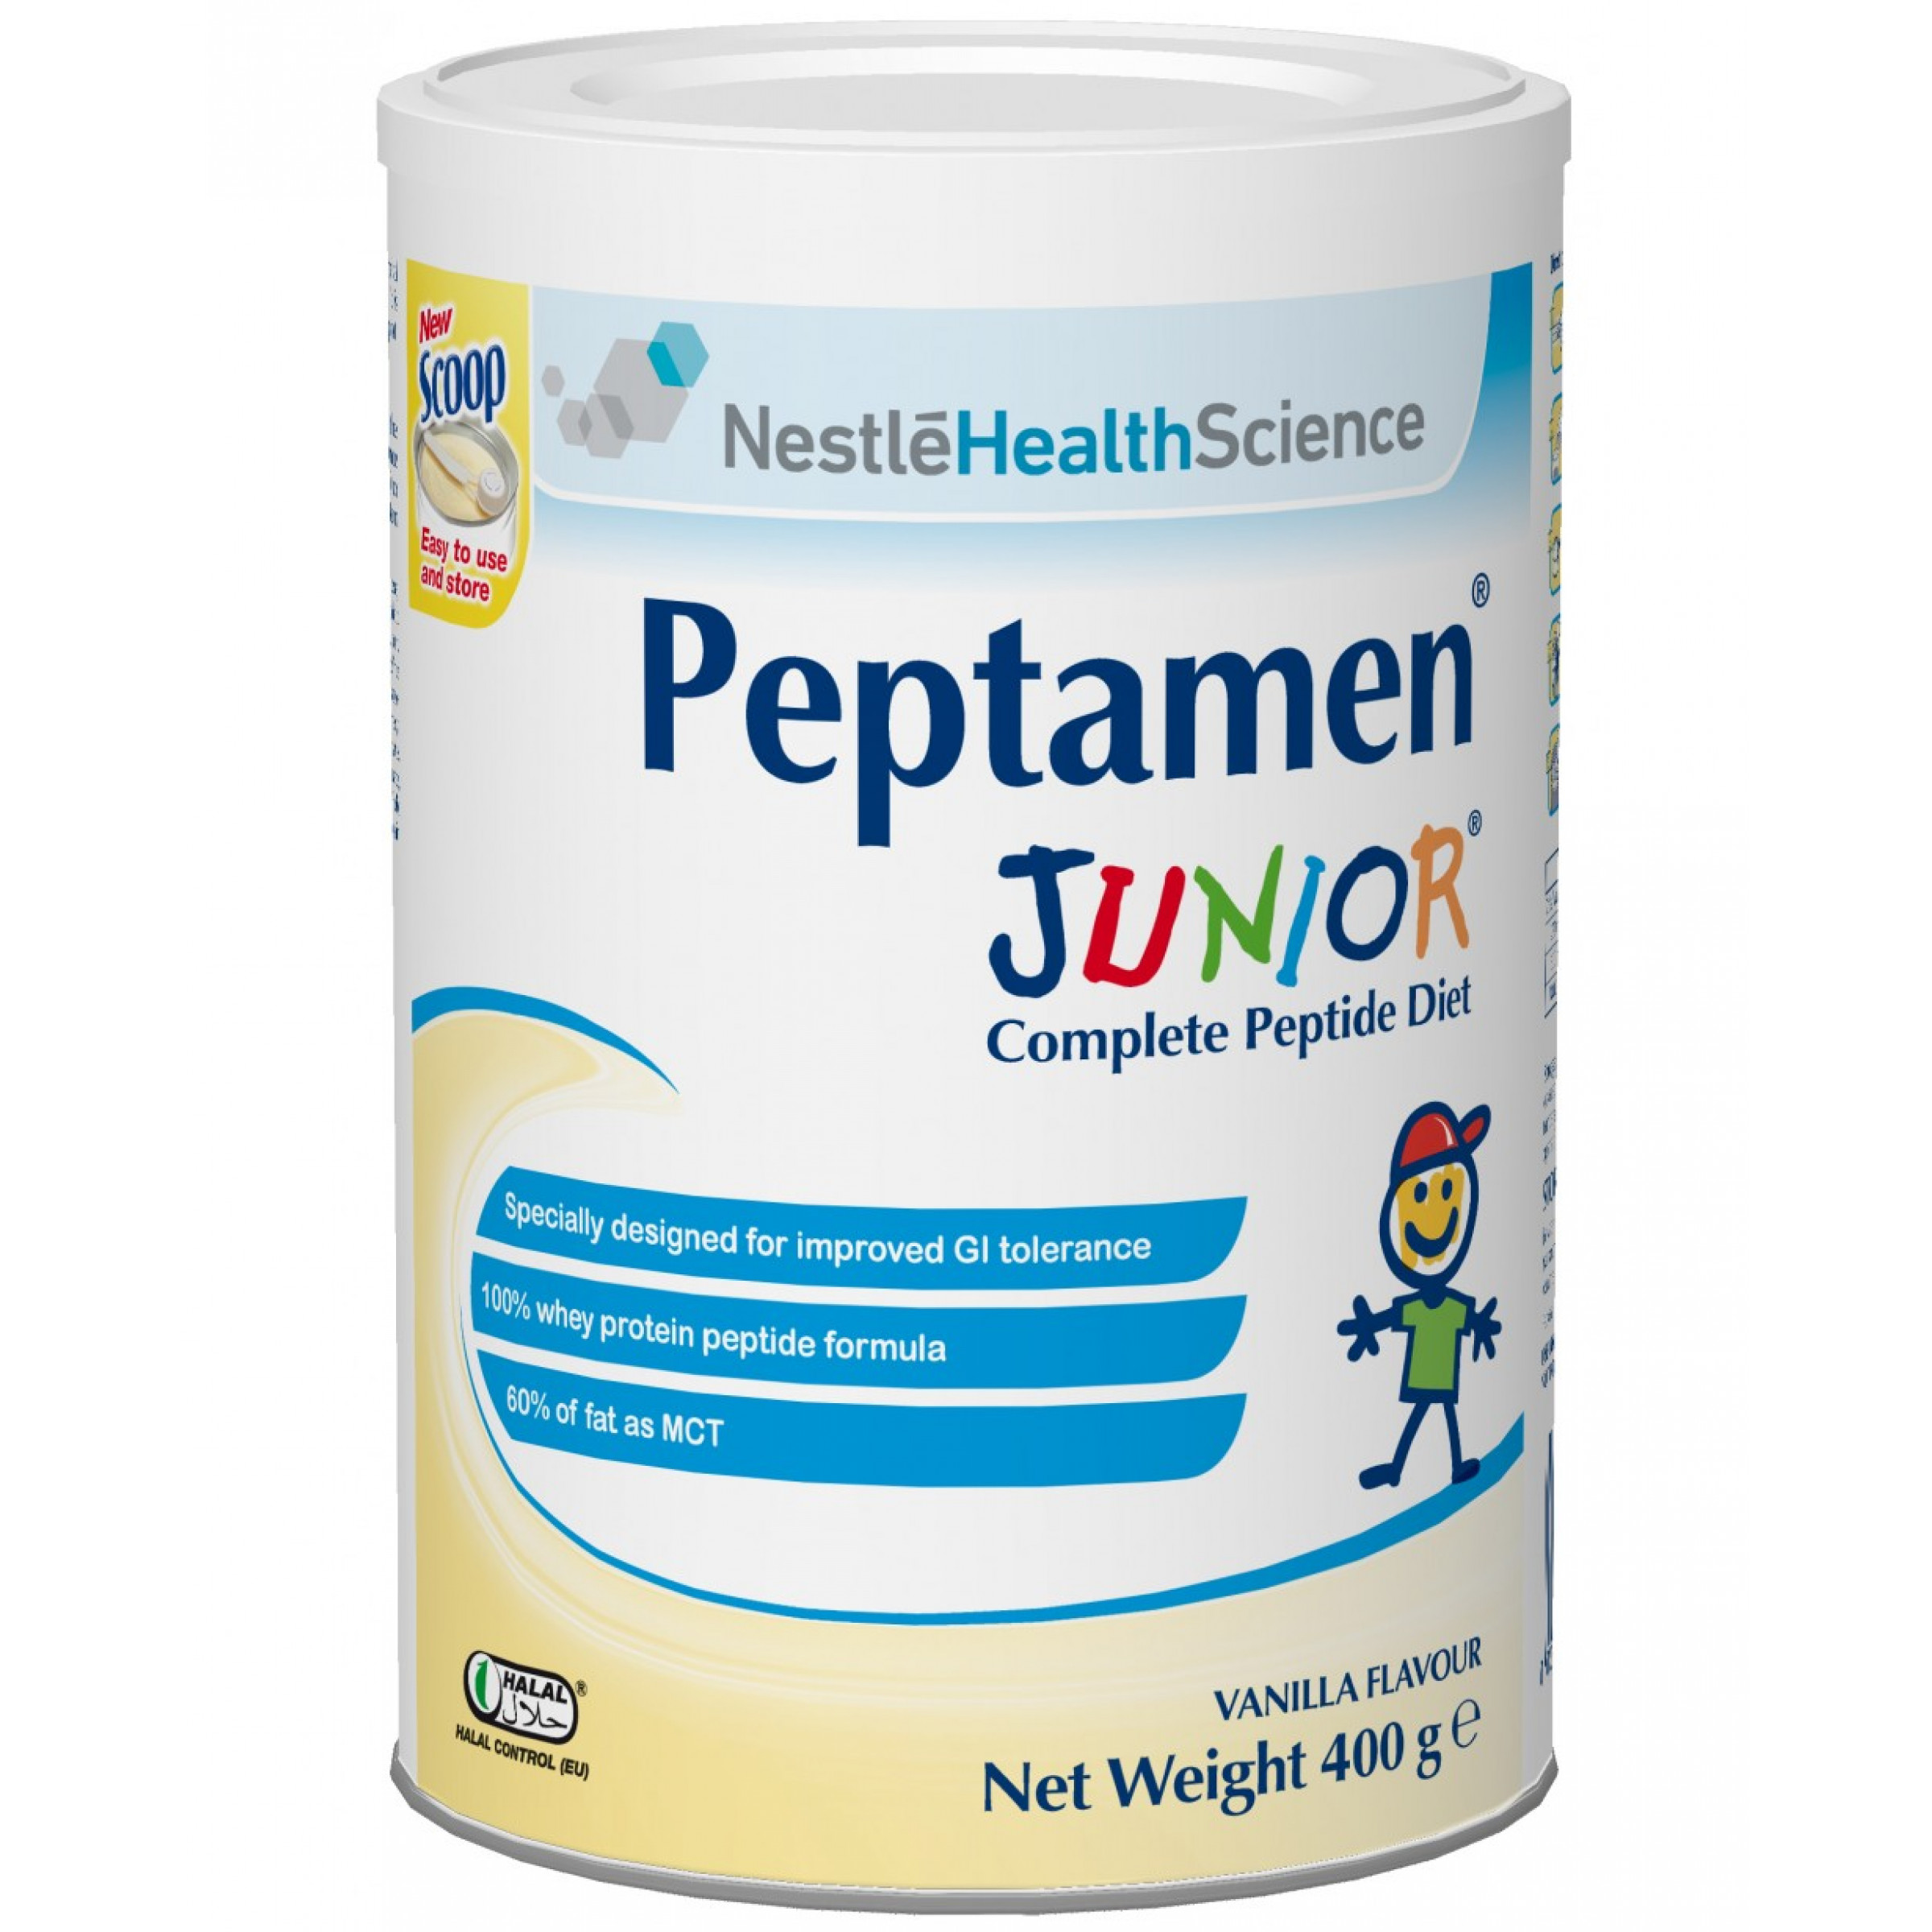 Сухая смесь PEPTAMEN Junior ACE002-1 (Пептамен Юниор) сбалансированная смесь для зондового и перорального питания для детей от 1 года до 10 лет, 400 г